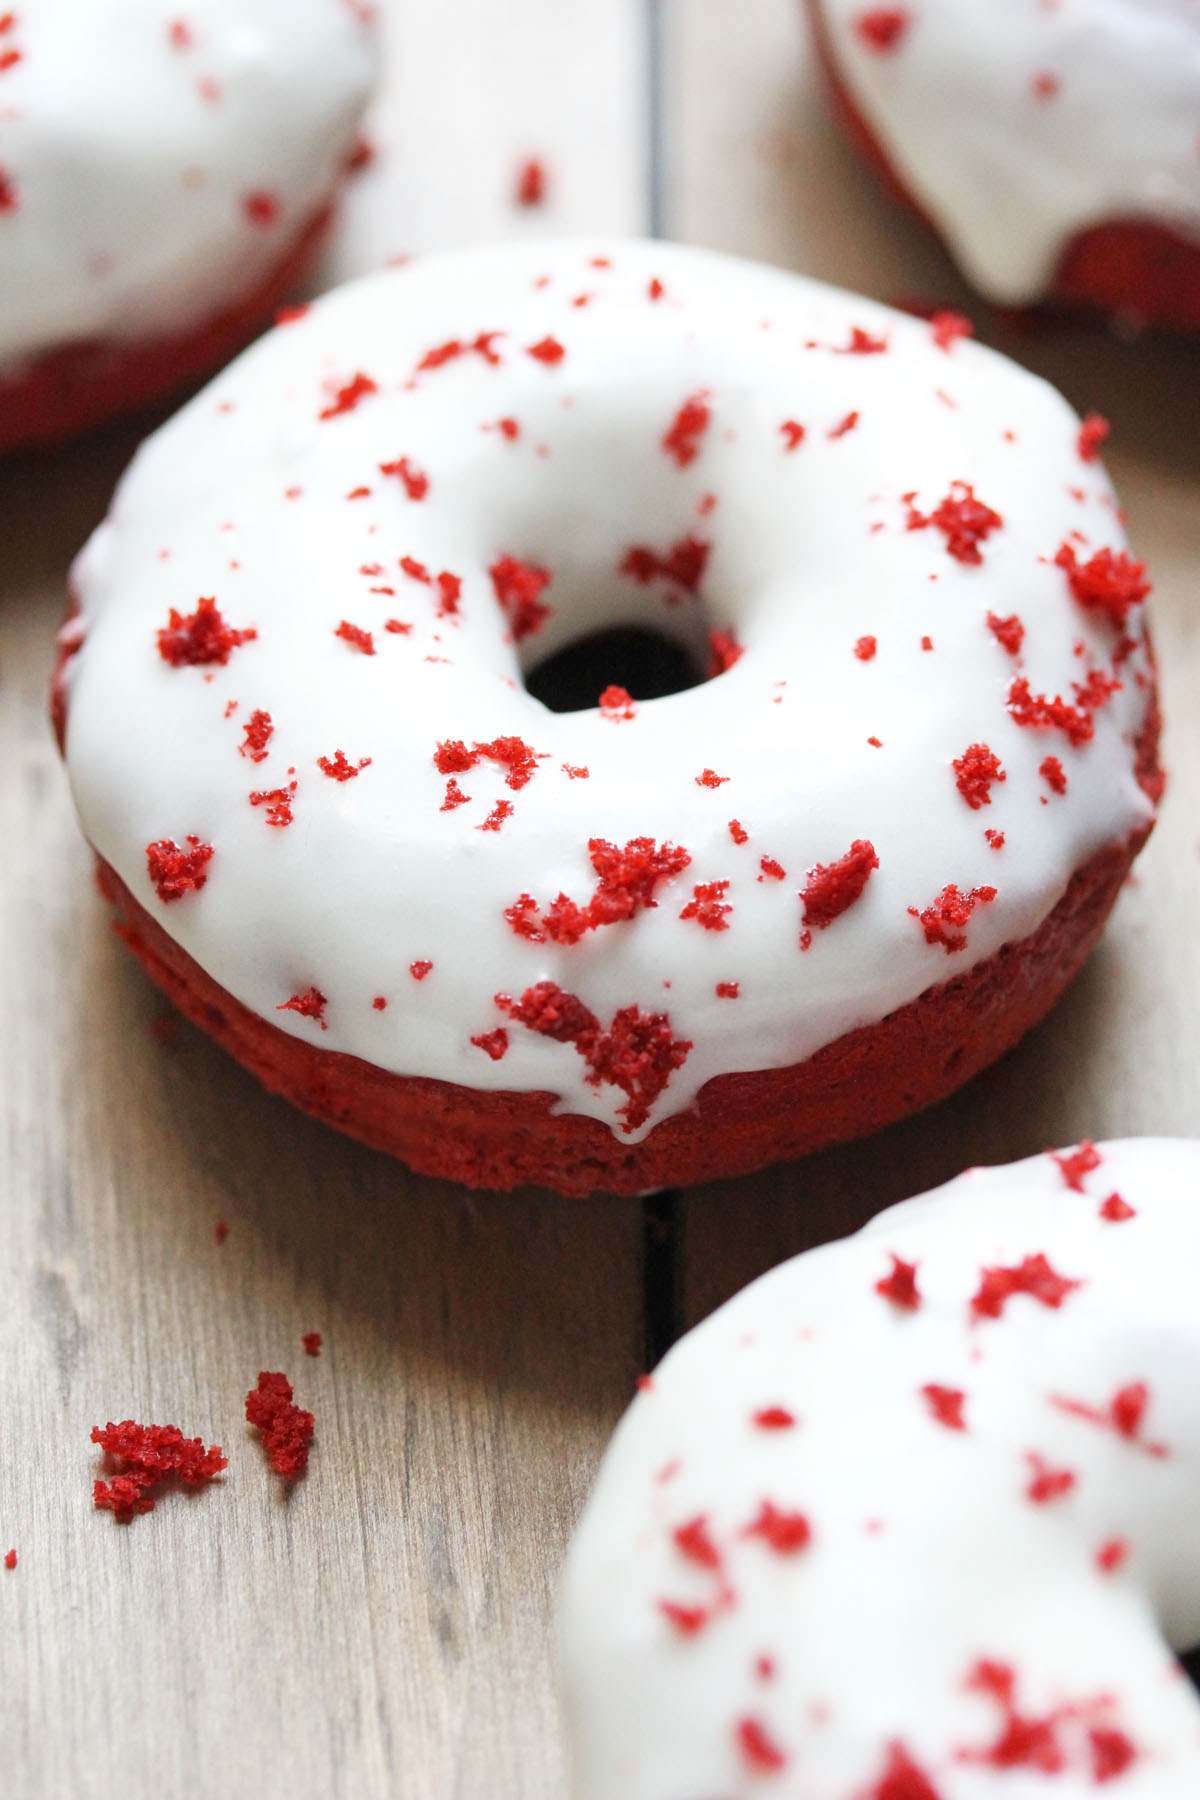 baked_red_velvet_doughnuts_side.jpg